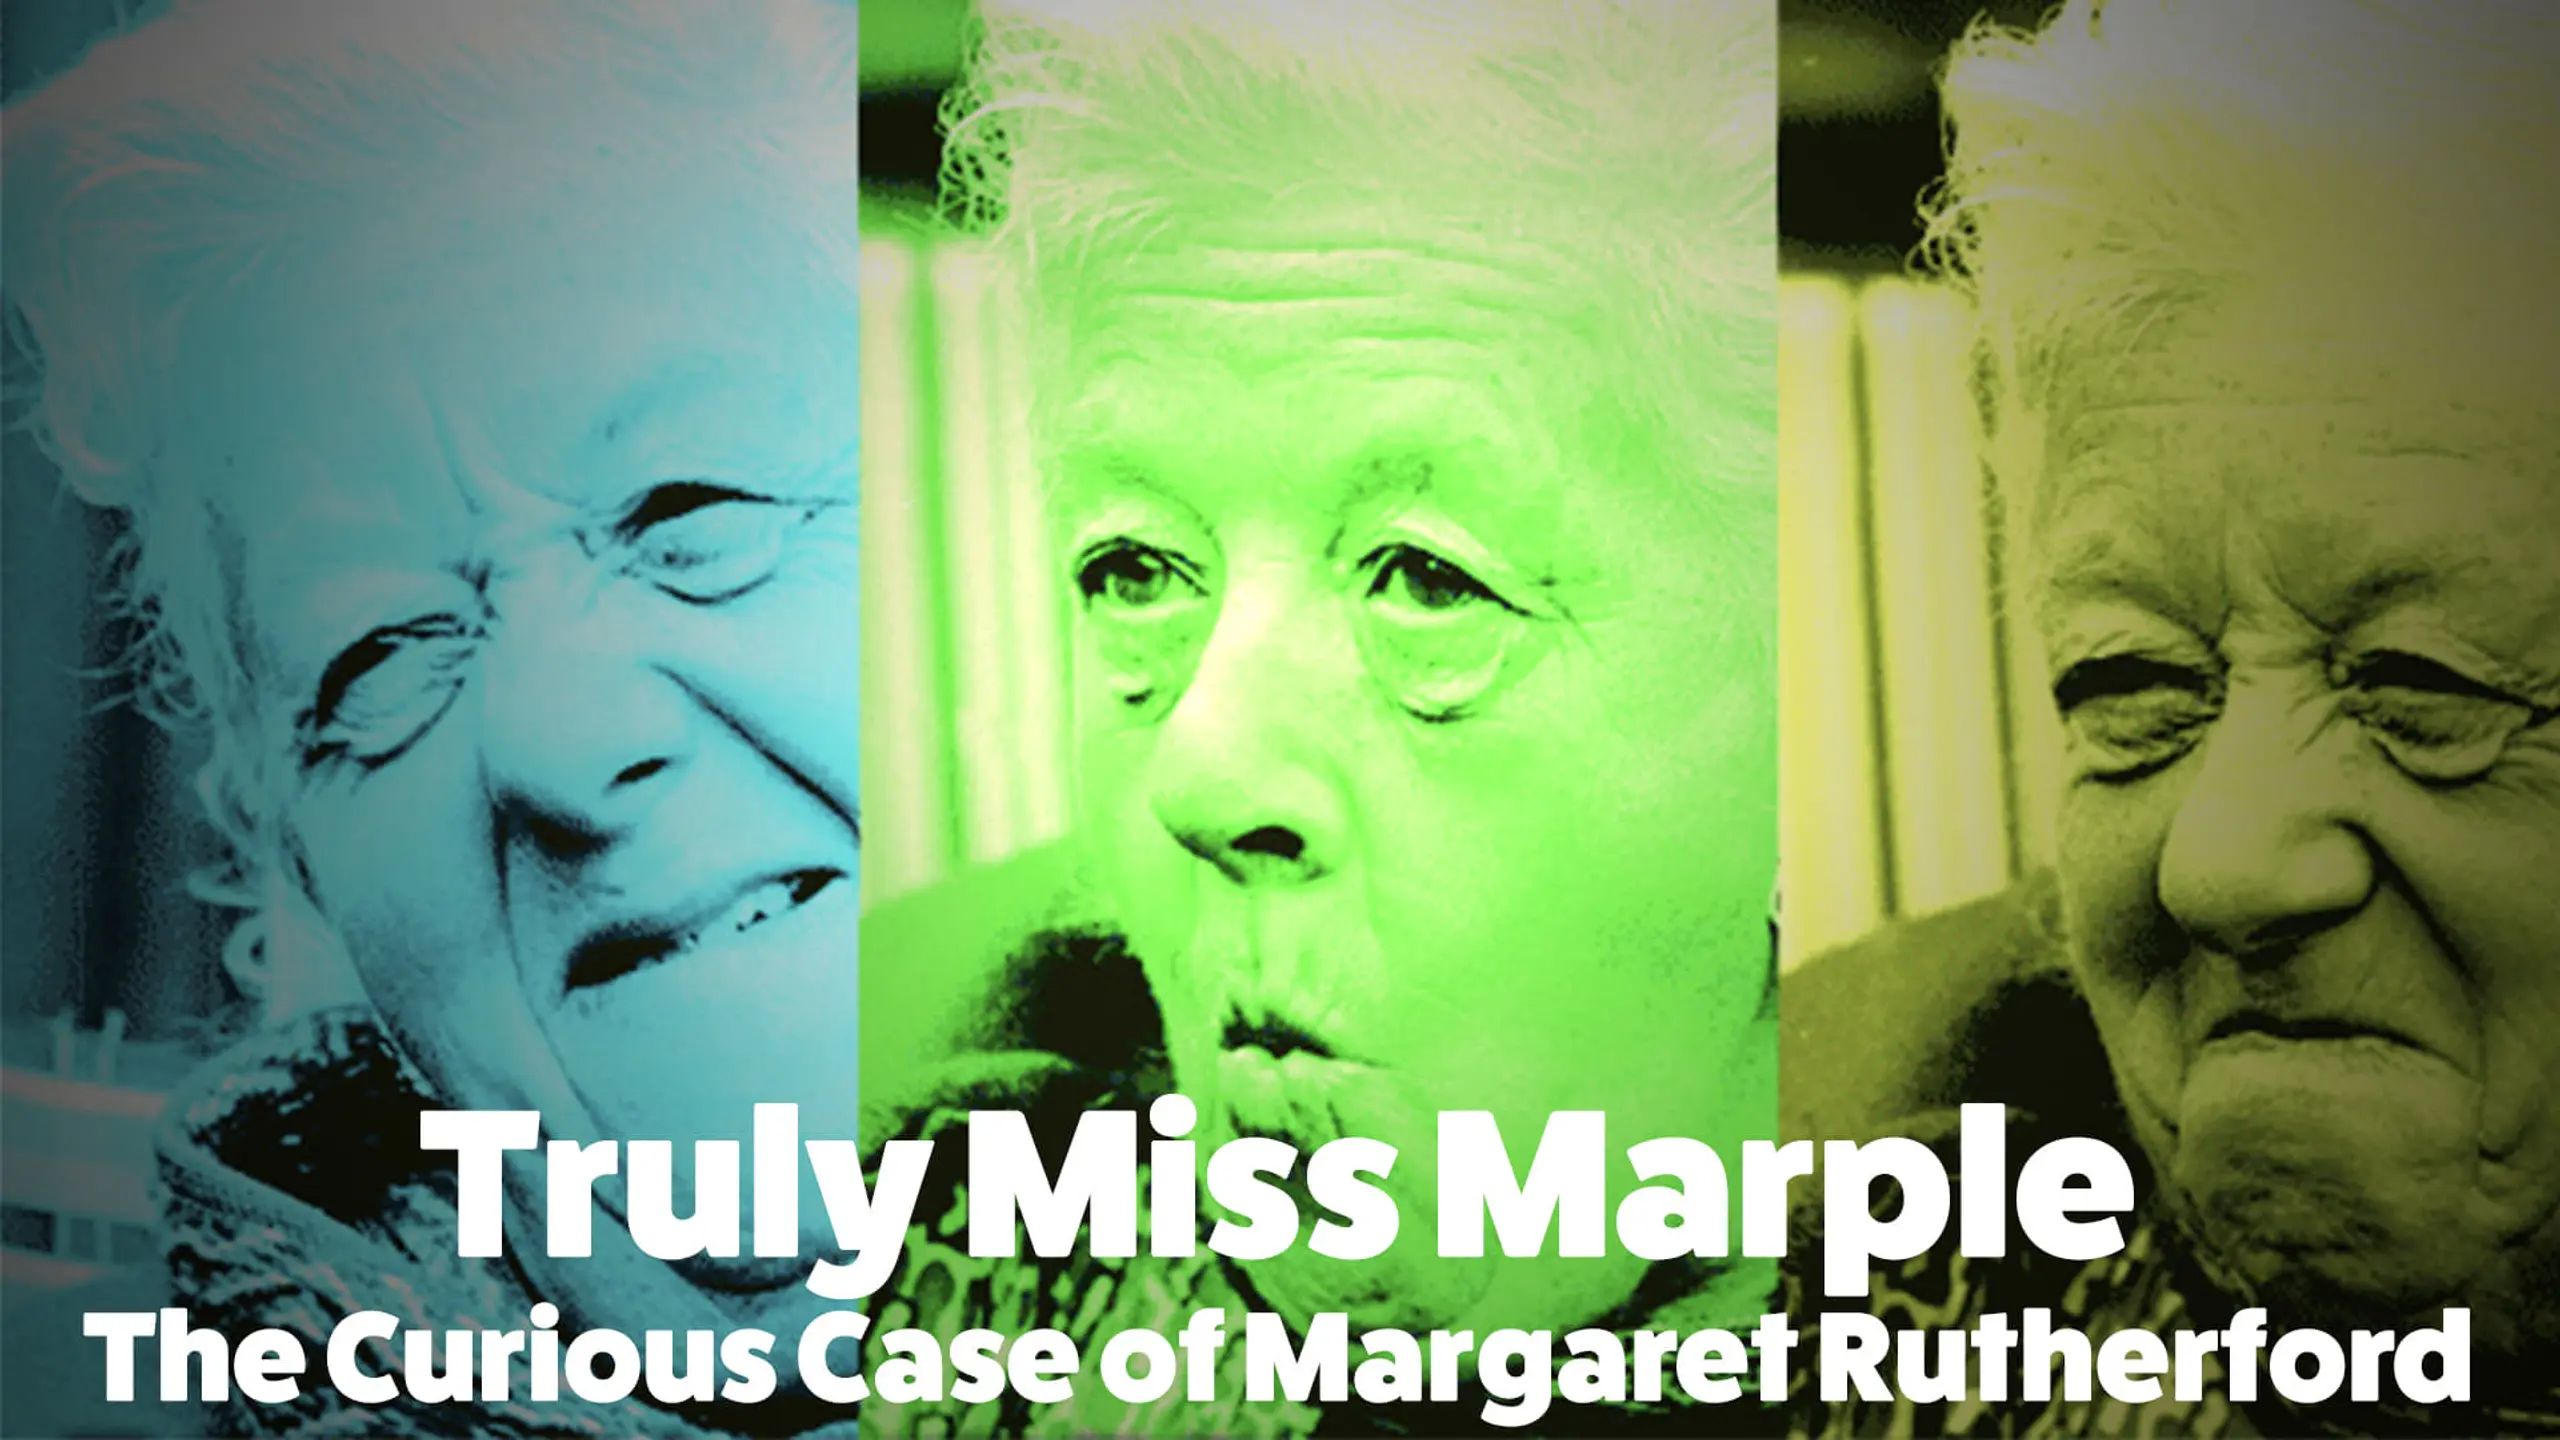 Die wahre Miss Marple - Der kuriose Fall Margaret Rutherford